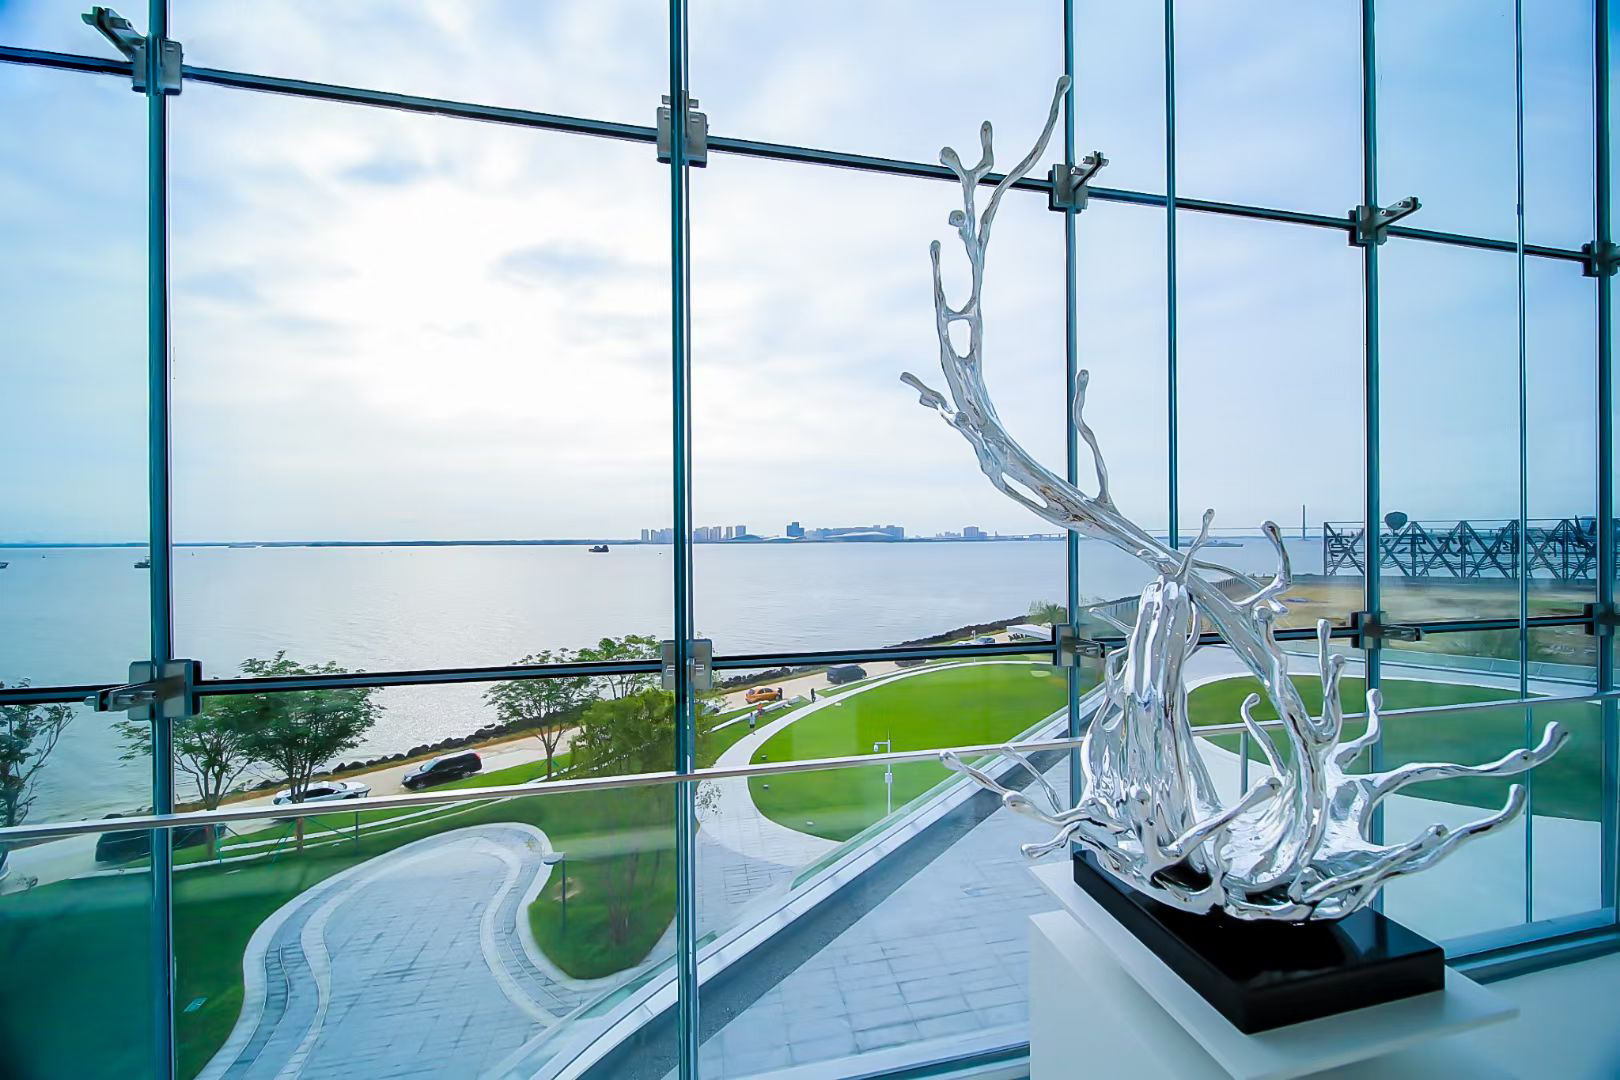 湛江文化旅游展示中心正式开放—2021年湛江海洋诗会同步举办